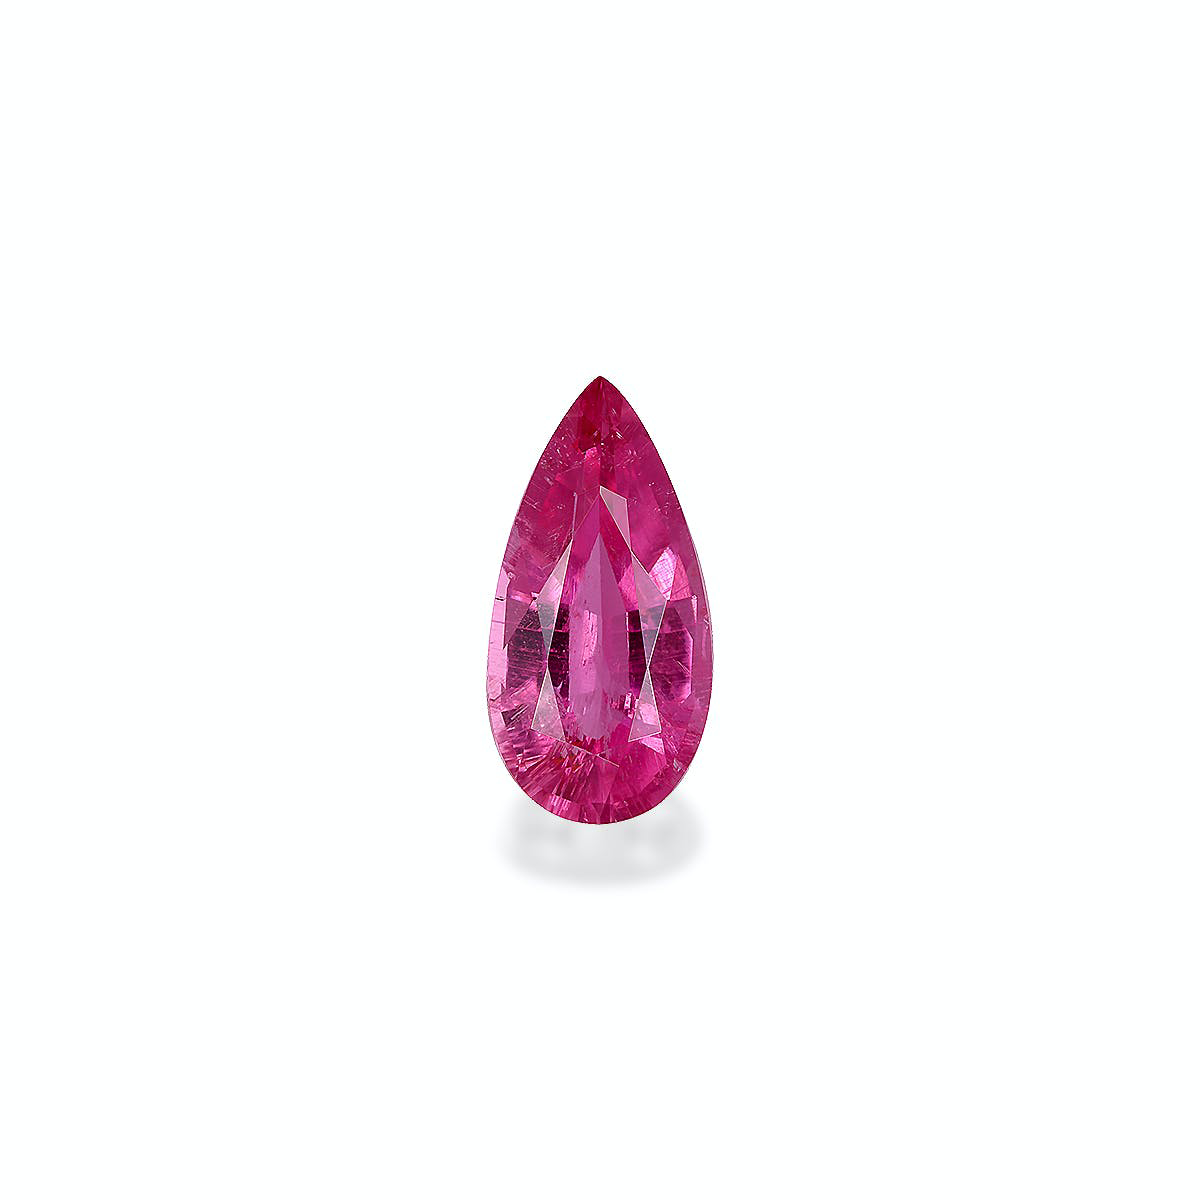 Picture of Fuscia Pink Rubellite Tourmaline 3.12ct (RL1138)